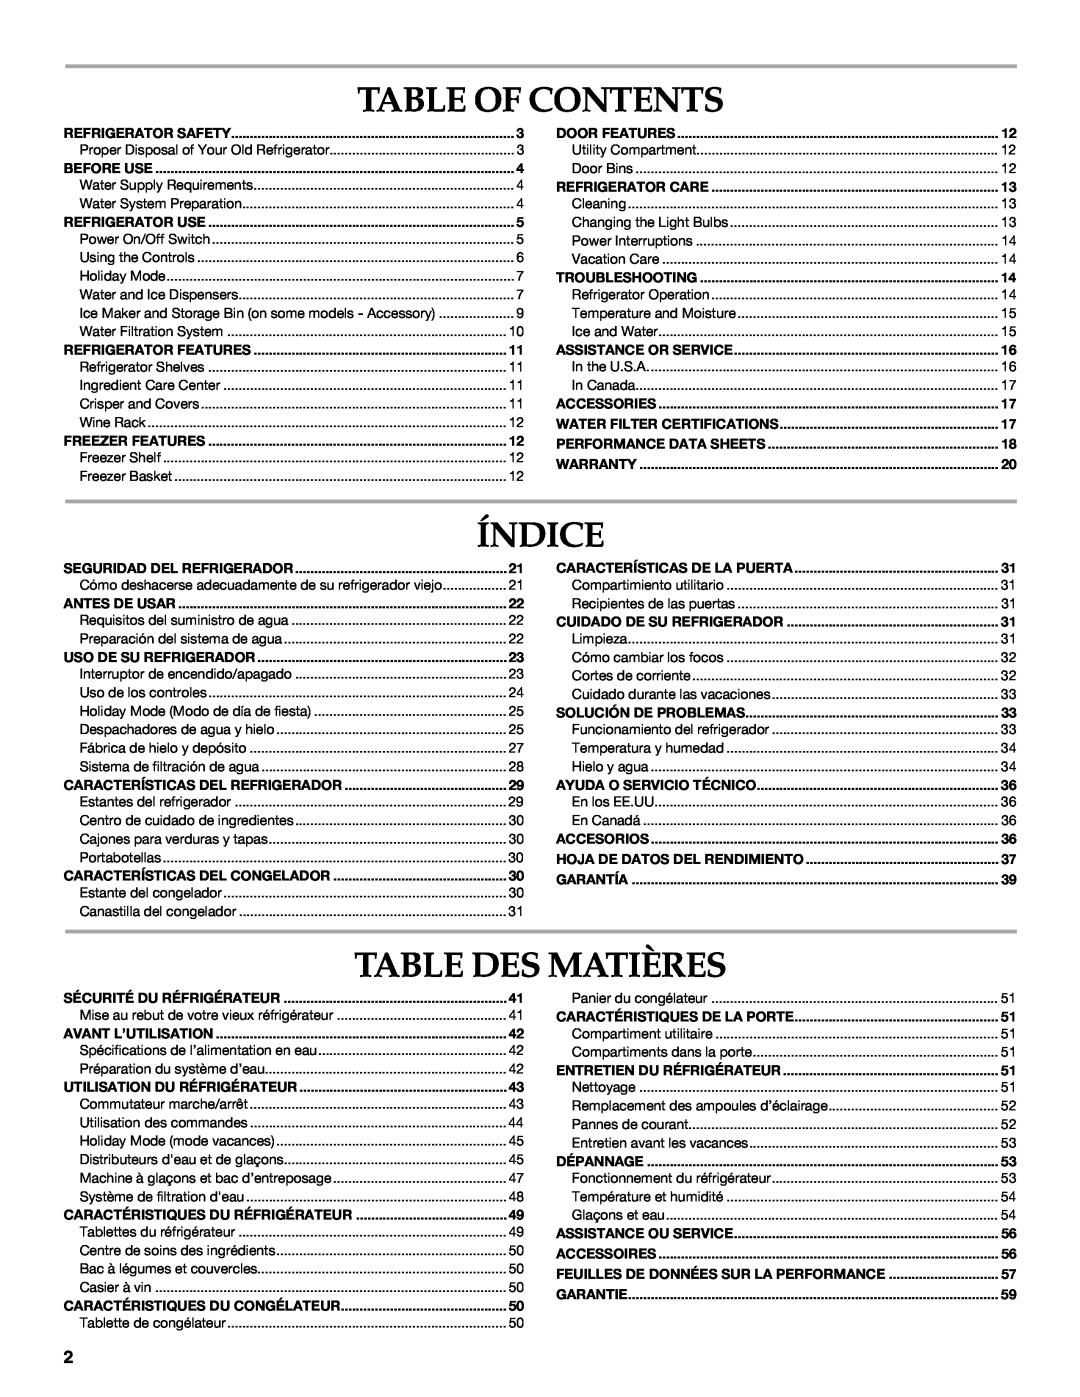 KitchenAid KSSC48QVS, W10303989A manual Table Of Contents, Índice, Table Des Matières, Caractéristiques Du Réfrigérateur 